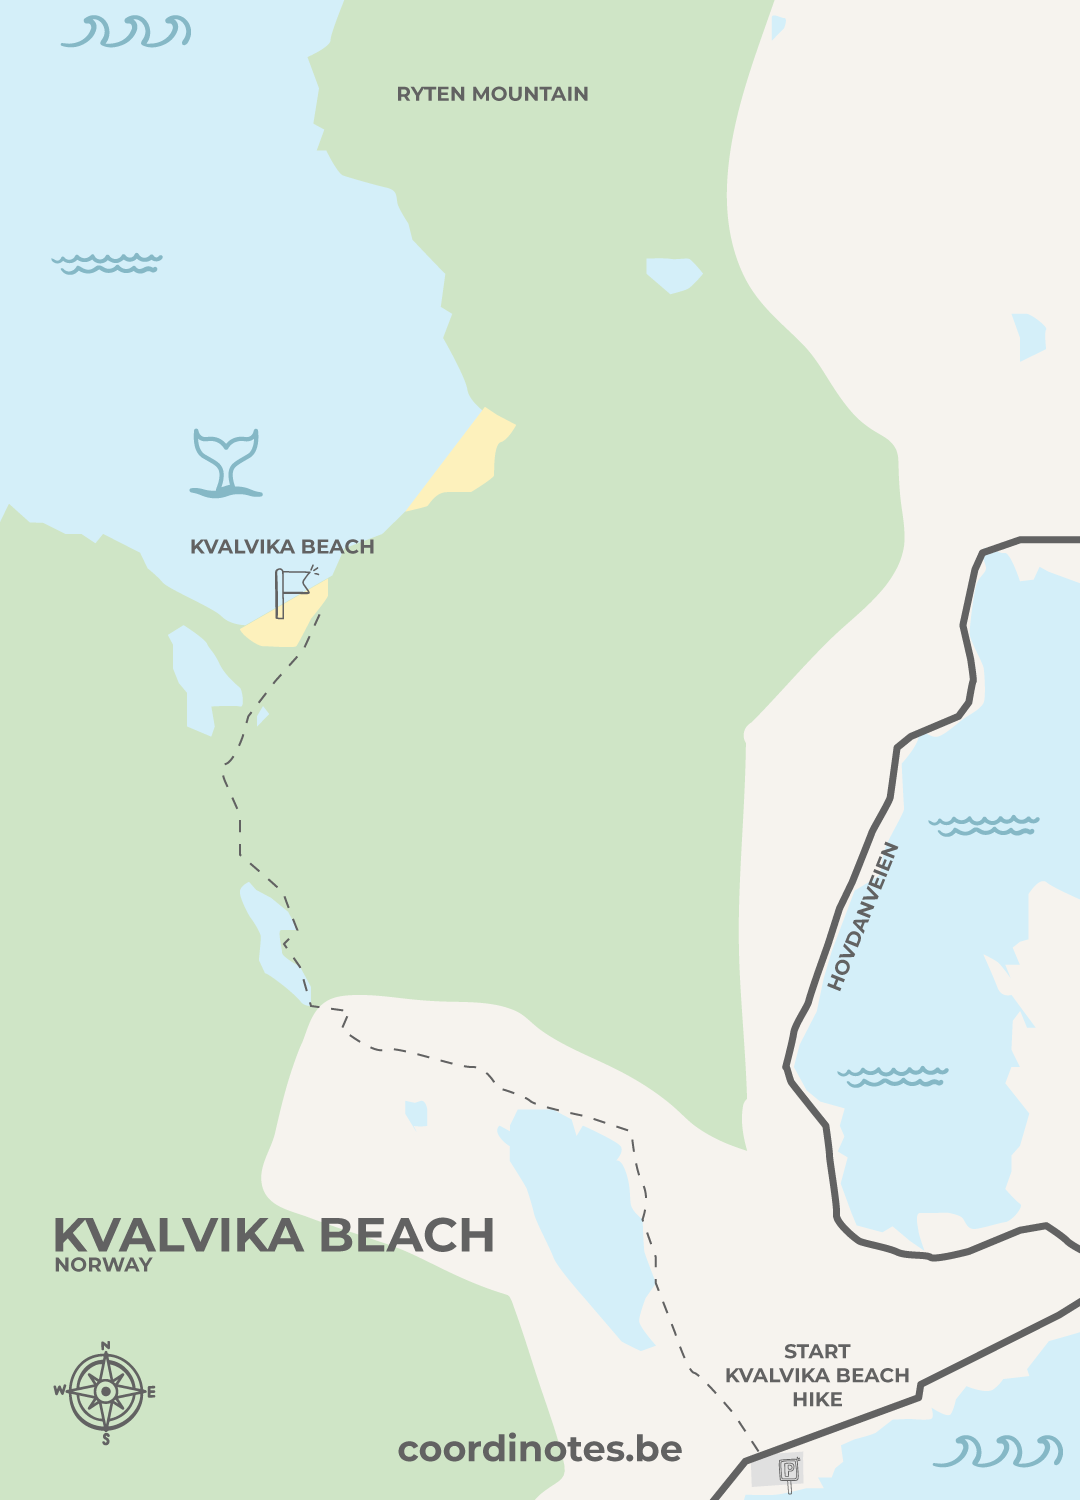 Map for the Kvalvika beach hike